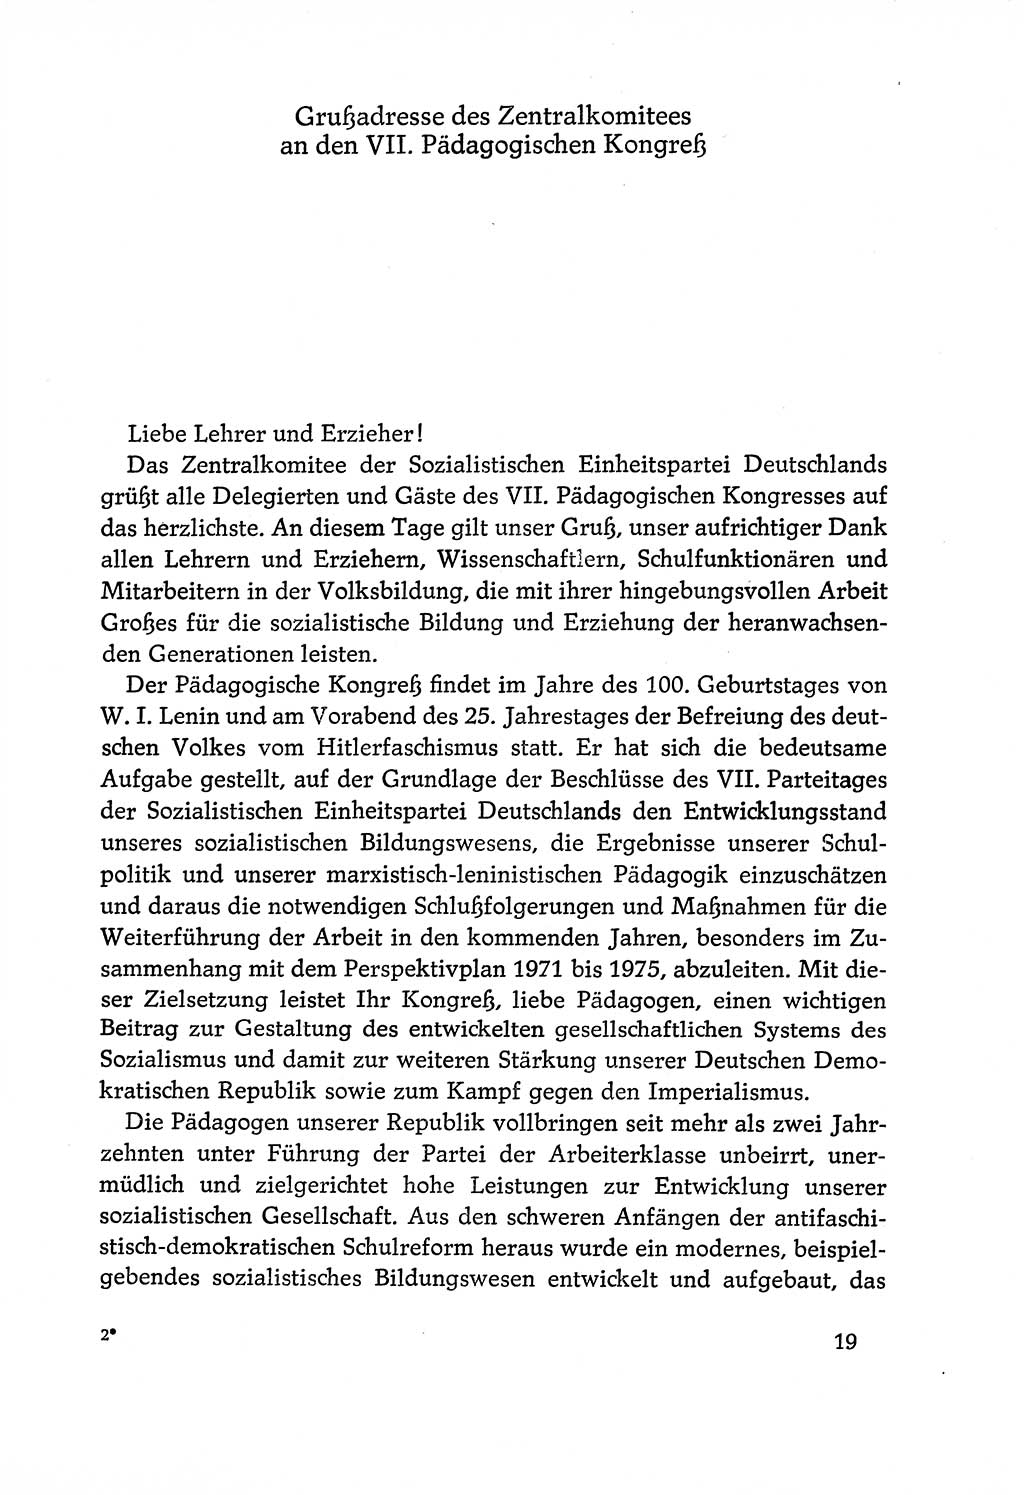 Dokumente der Sozialistischen Einheitspartei Deutschlands (SED) [Deutsche Demokratische Republik (DDR)] 1970-1971, Seite 19 (Dok. SED DDR 1970-1971, S. 19)